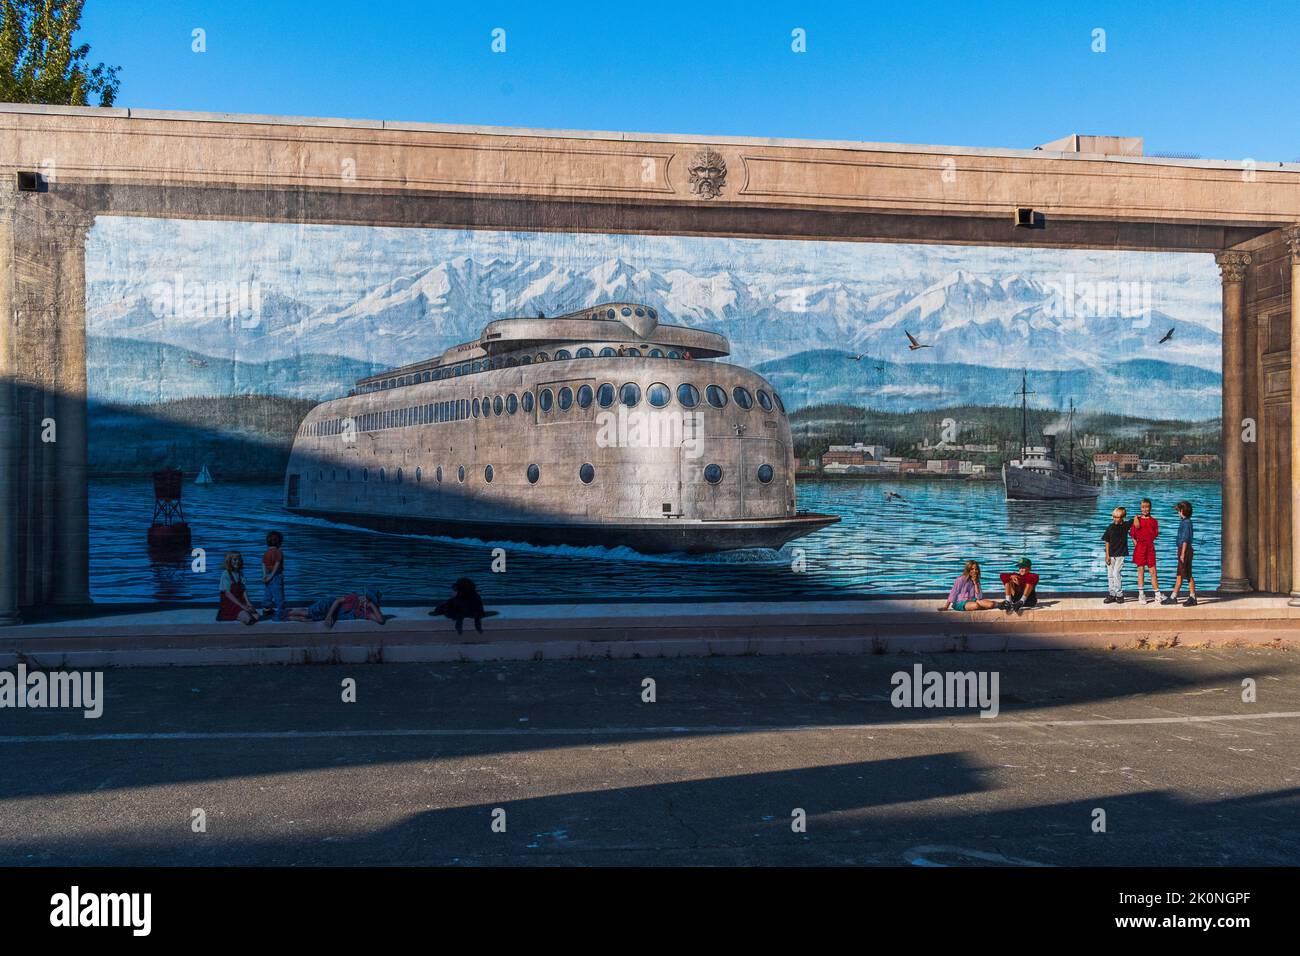 Port Angeles, WA USA - 1 agosto 2022: Un murale bellissimo raffigurante il traghetto MV Kalakala e le persone che si godono il lungomare Foto Stock